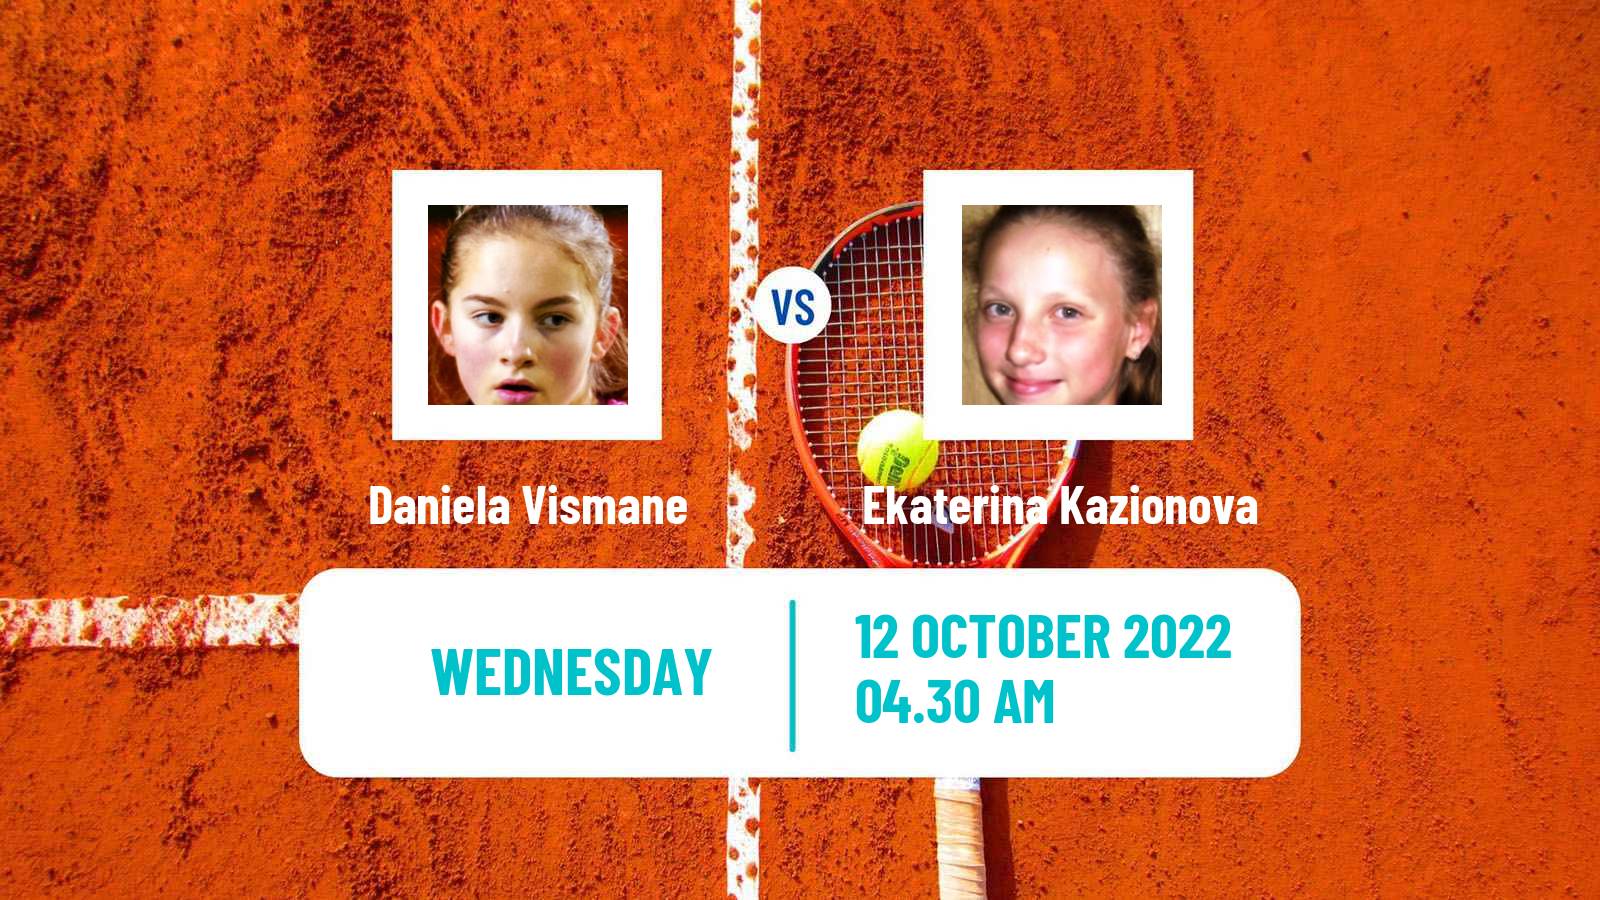 Tennis ITF Tournaments Daniela Vismane - Ekaterina Kazionova